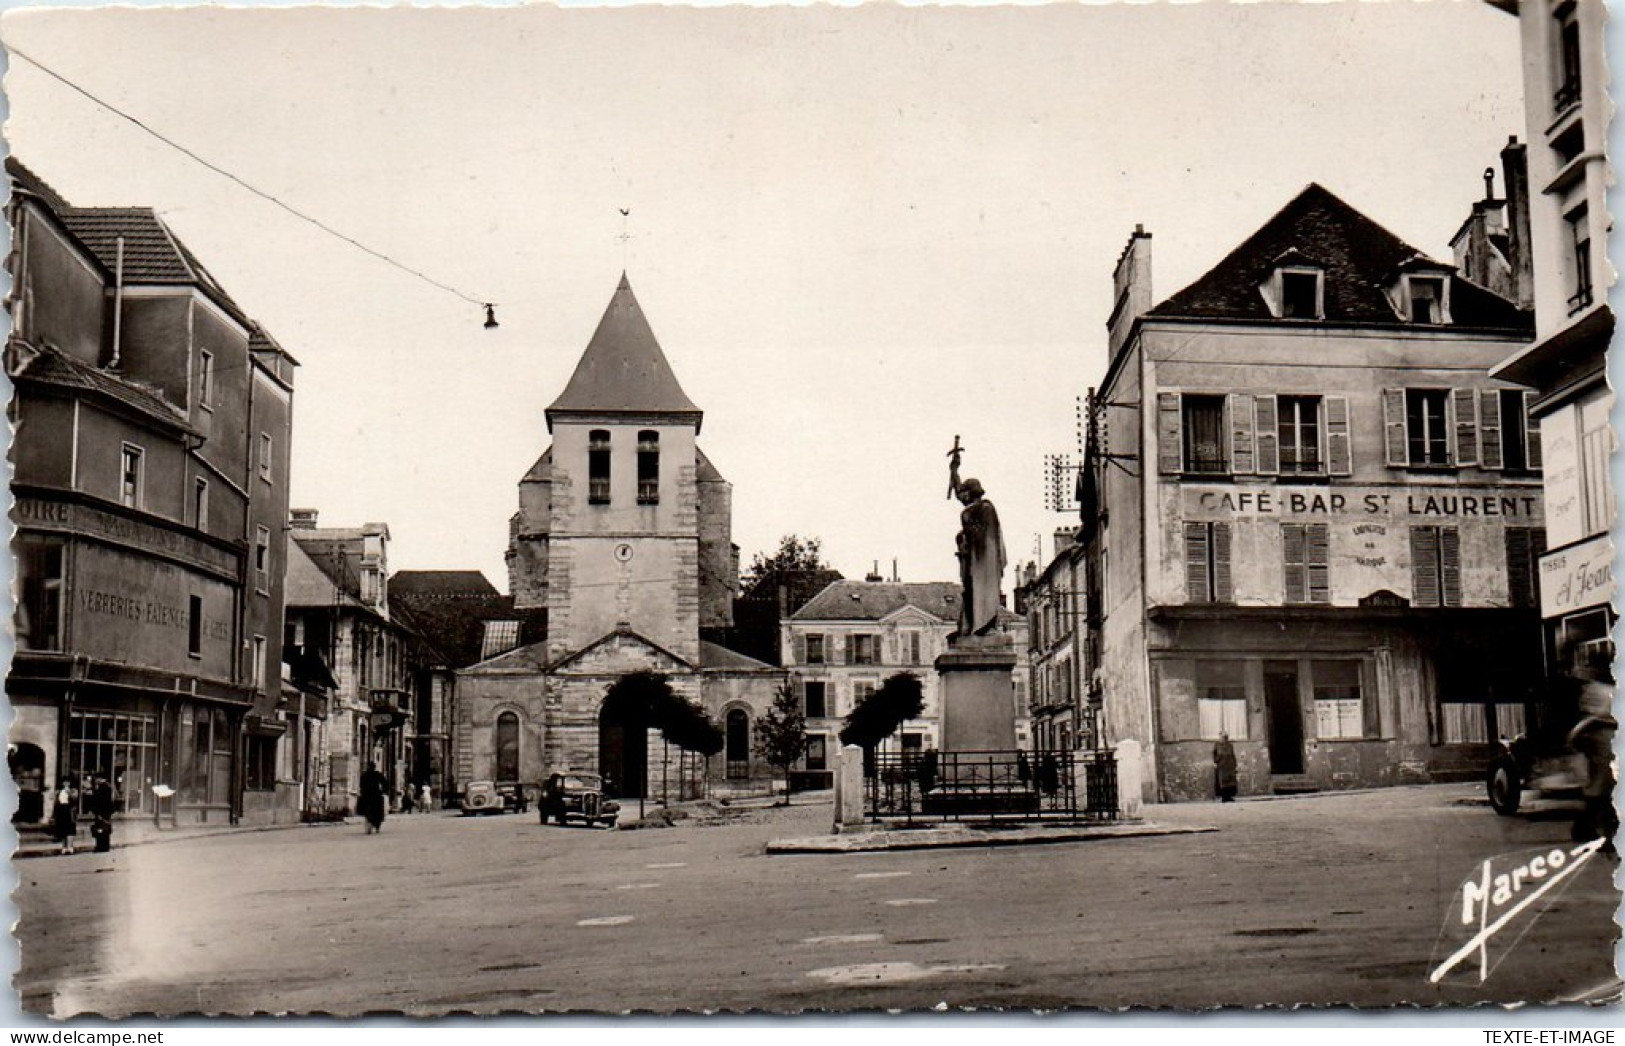 77 LAGNY THORIGNY - Eglise Saint Martin Et Place Du Marche  - Lagny Sur Marne